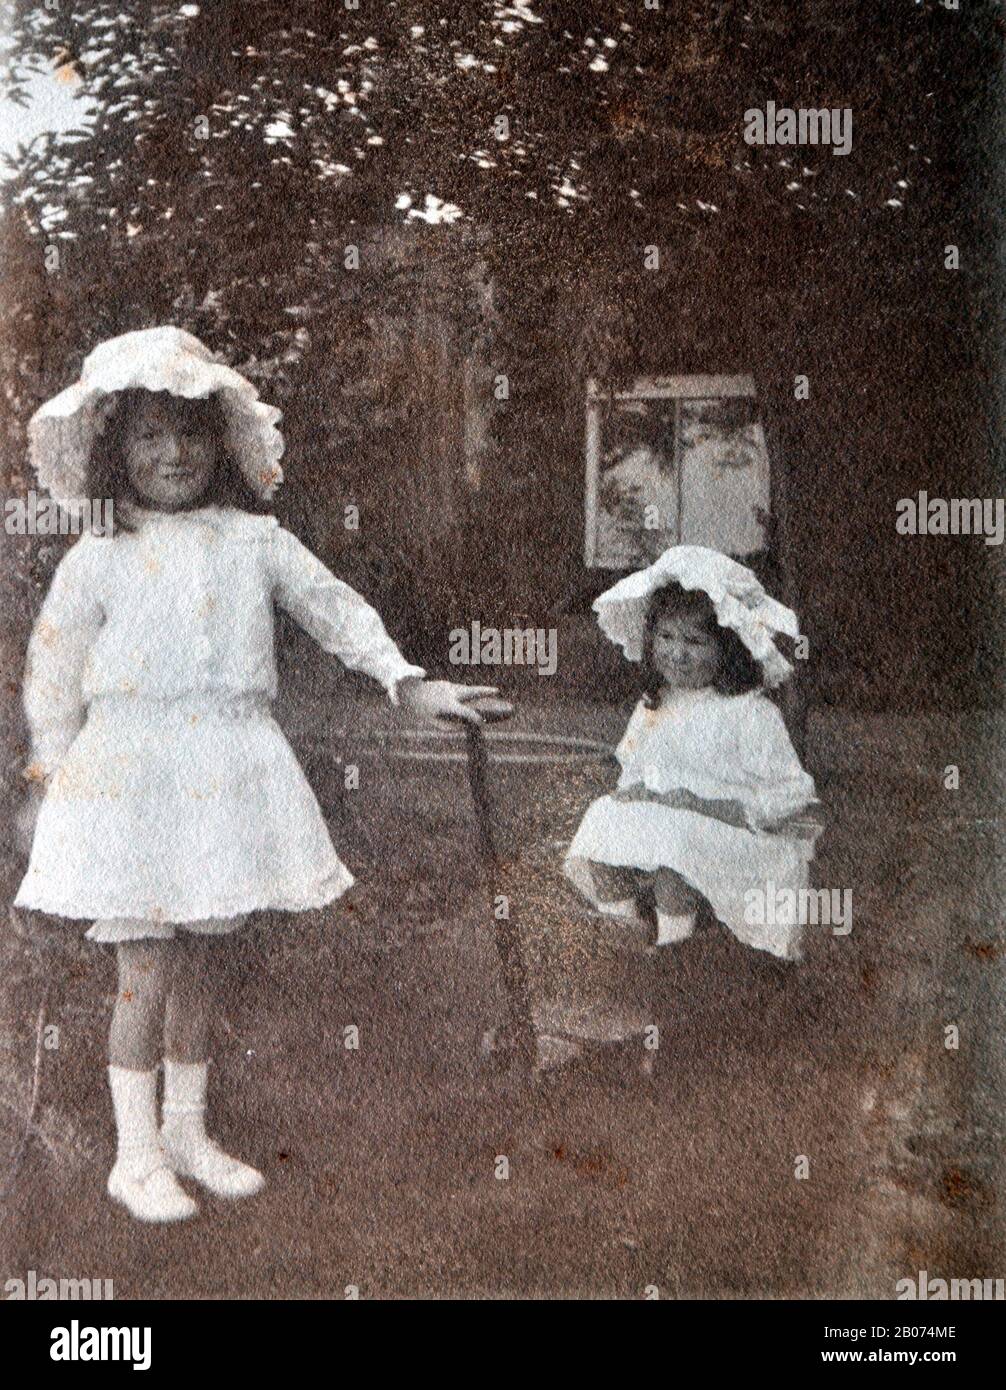 Archivfoto, alt, schwarz und weiß von zwei jungen Mädchen in einem Garten, von denen eines in einem Rollwagen sitzt, während das ältere Mädchen den Griff des Rollwagens hält, als ob sie ihn zieht. Beide Mädchen tragen weiße Kleider und weiße Hüte. Stockfoto